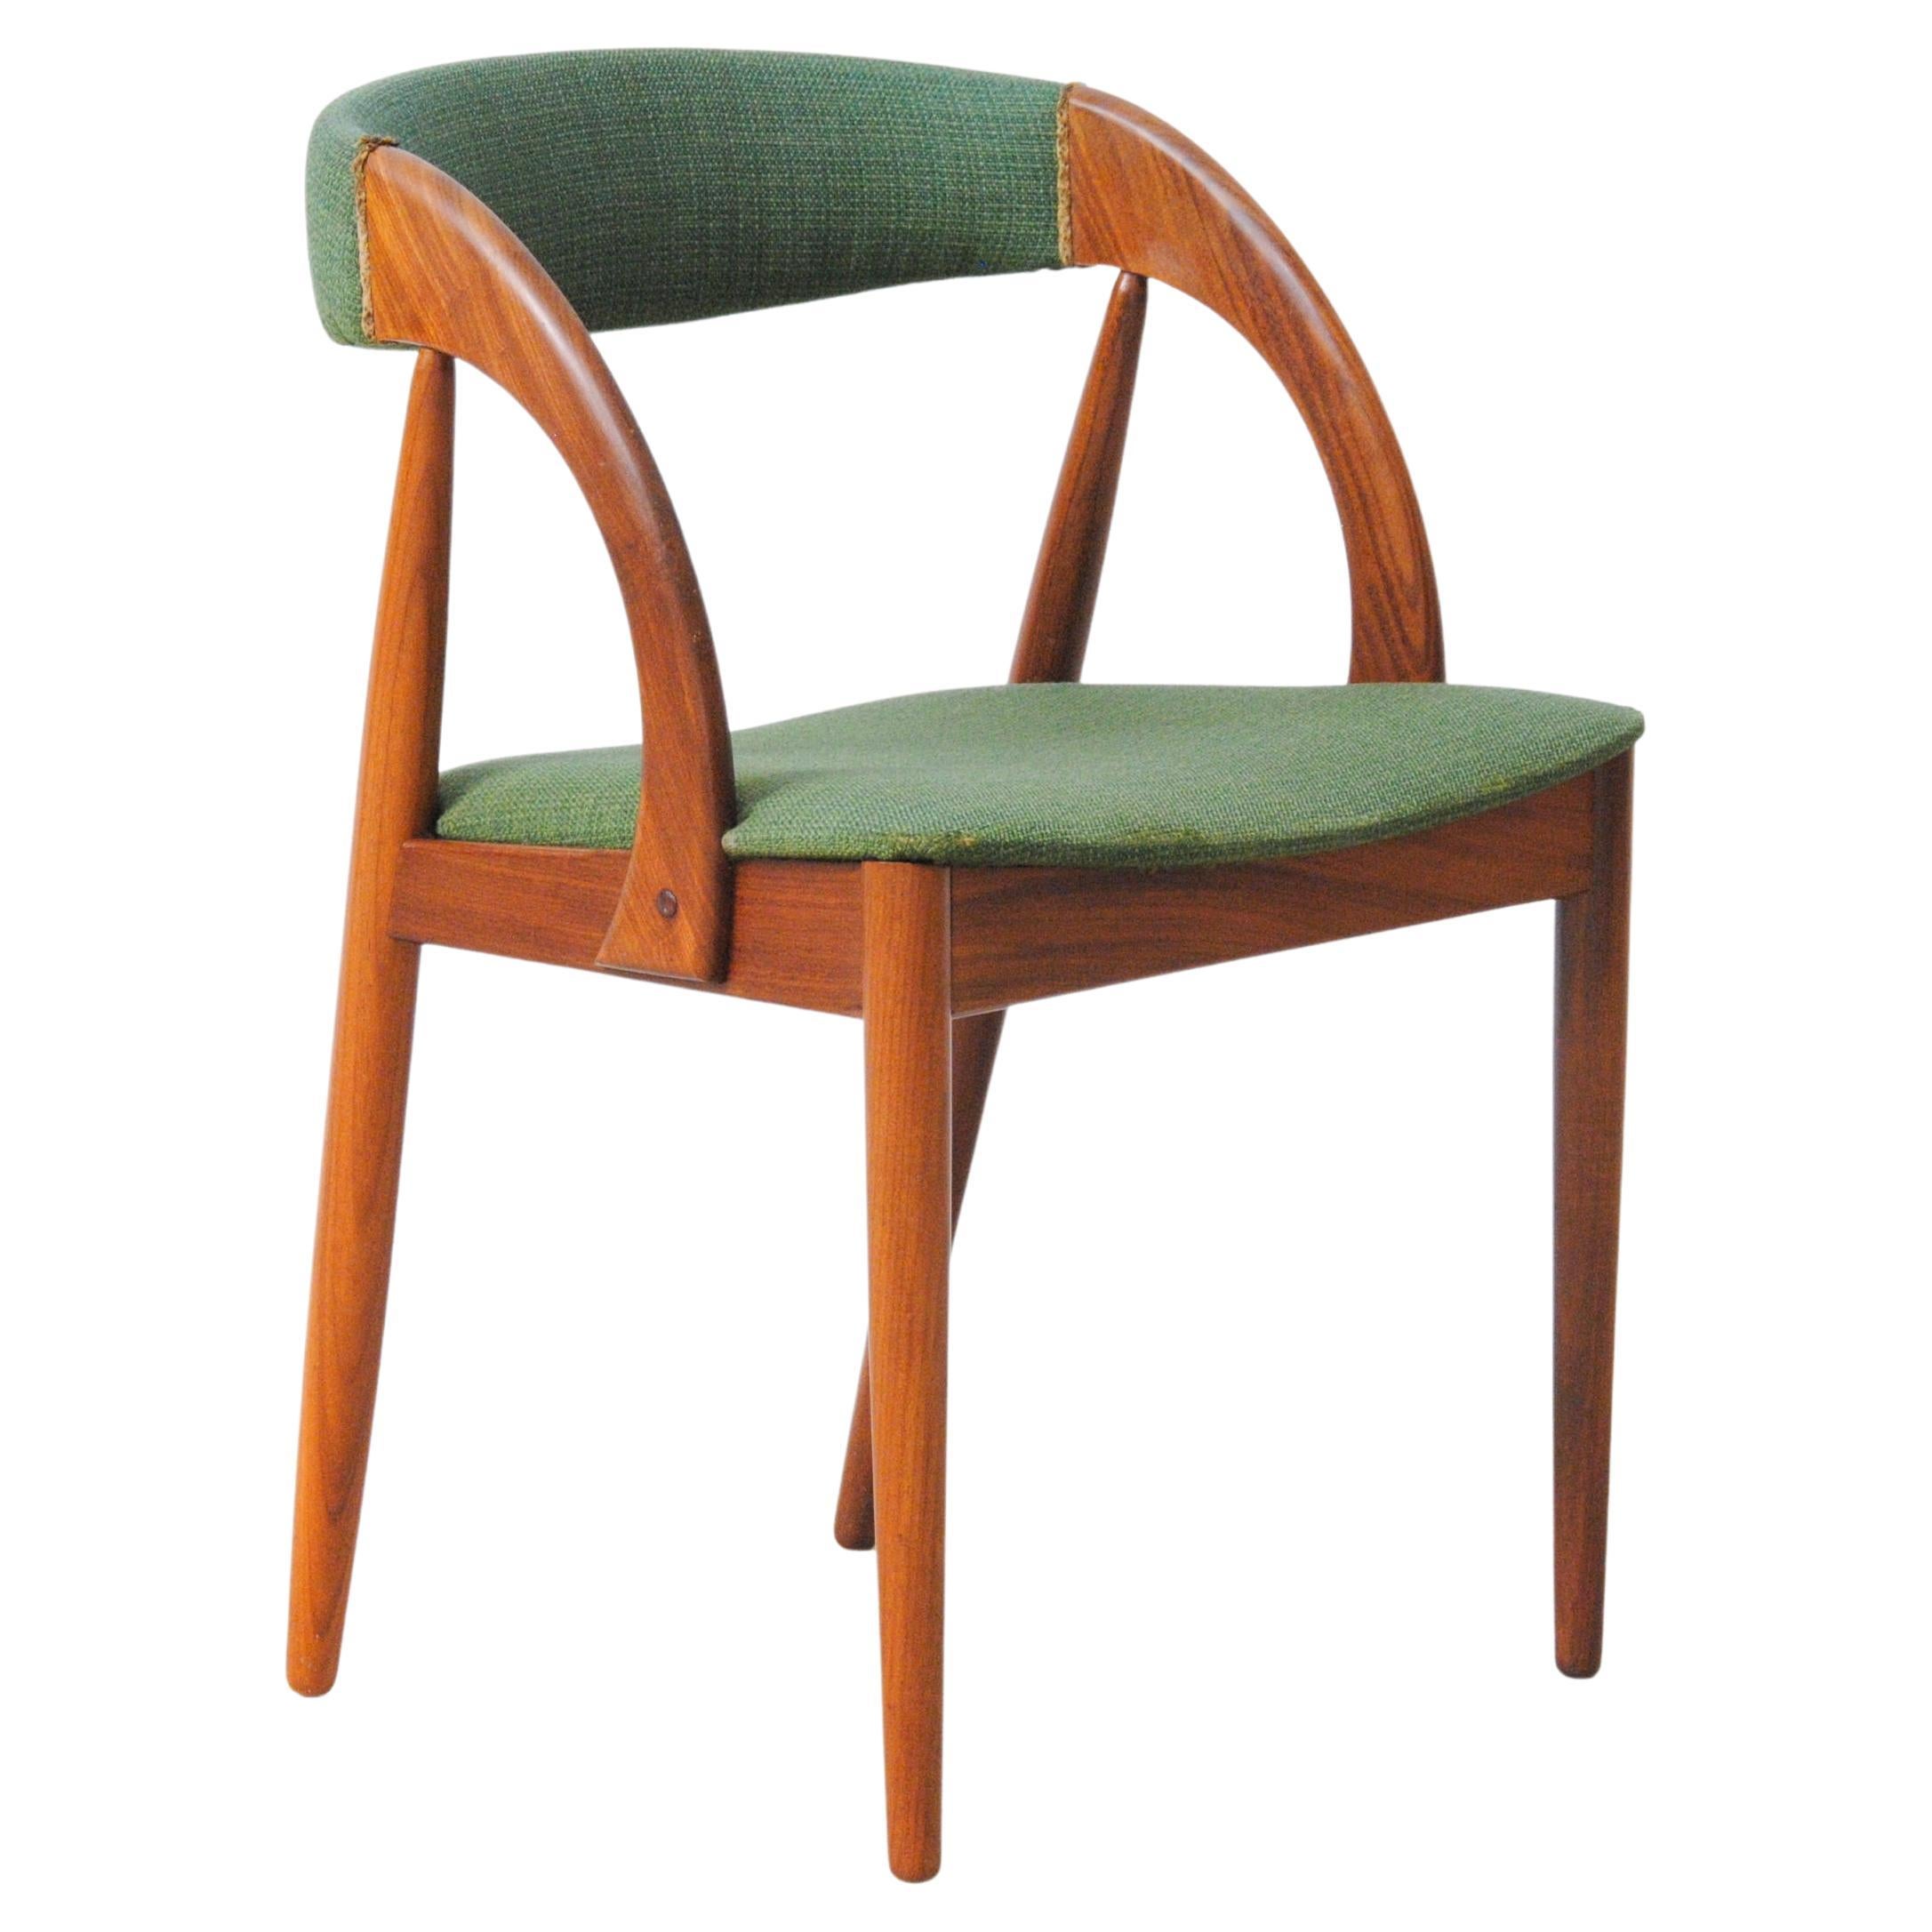 Chaise danoise Johannes Andersen restaurée et revernie, retapissée sur mesure, incluse en vente